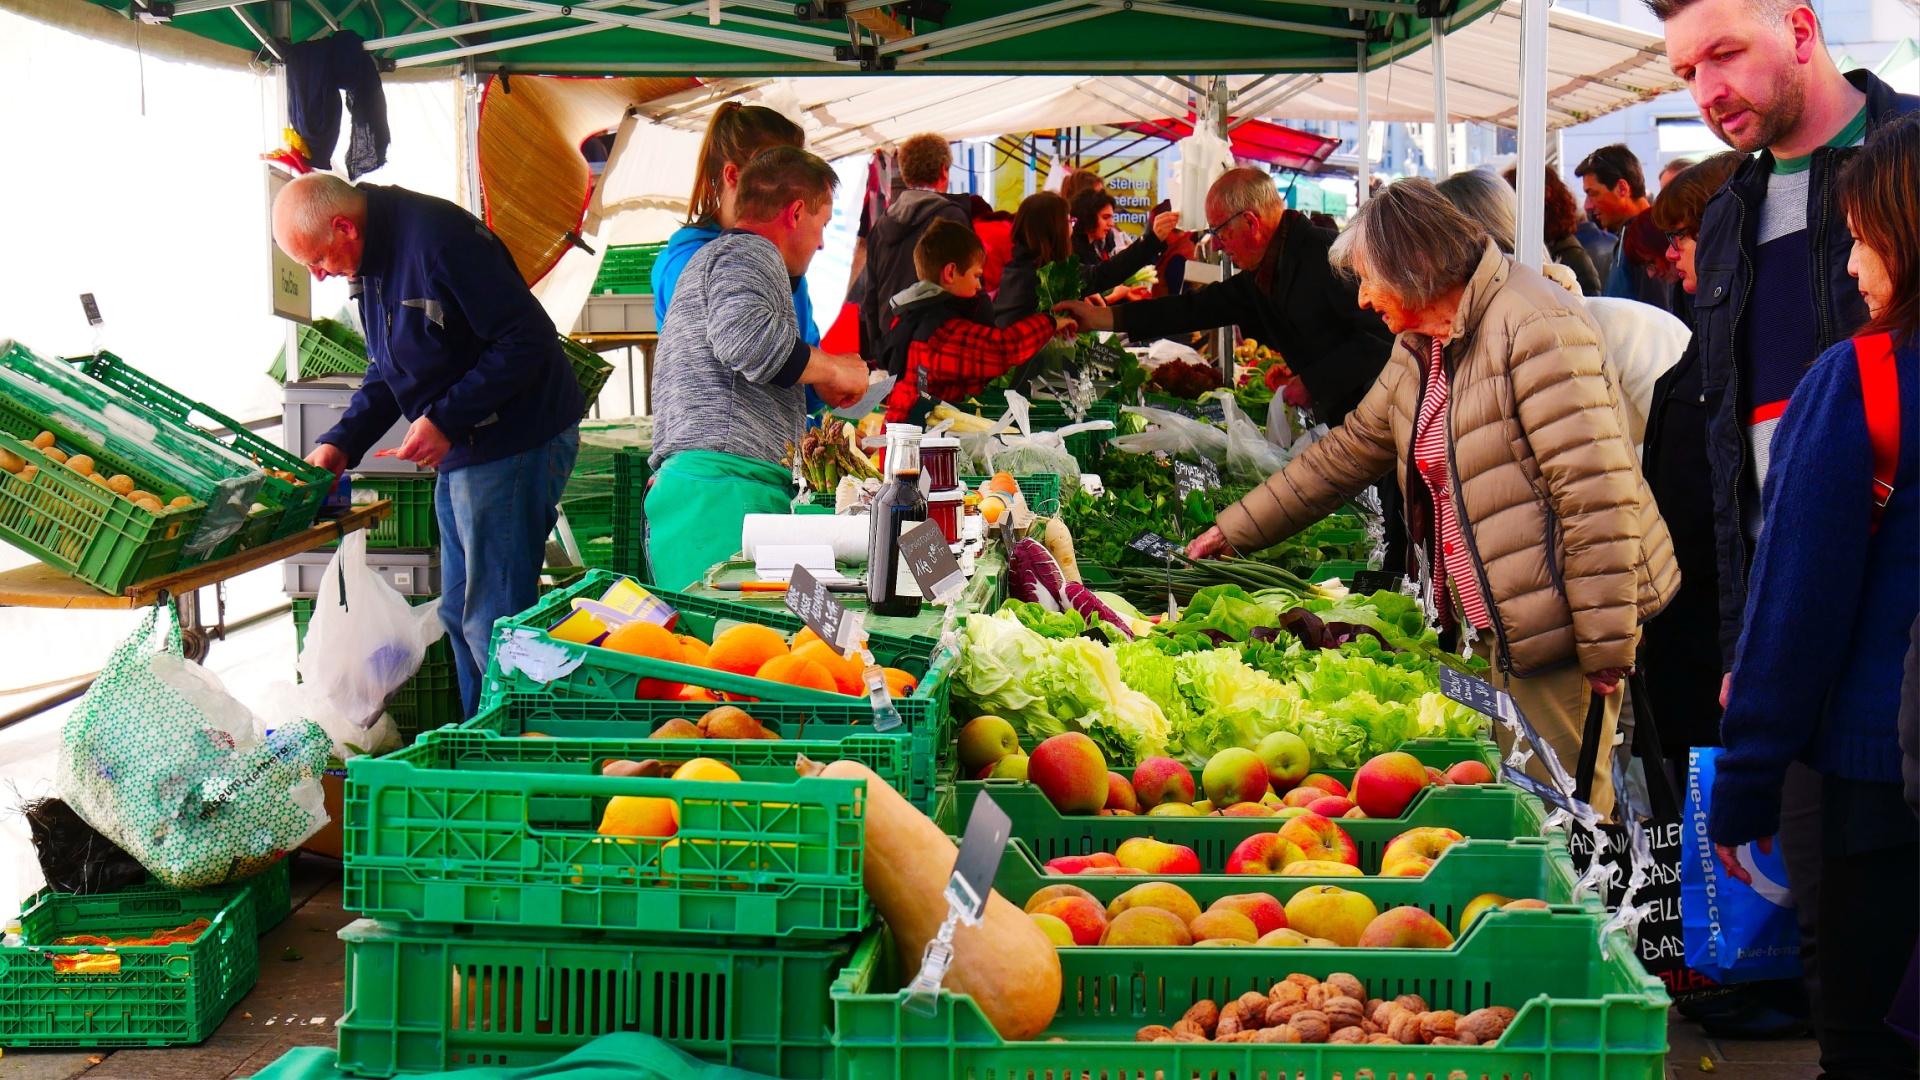 Piața agroalimentară unde se vând legume